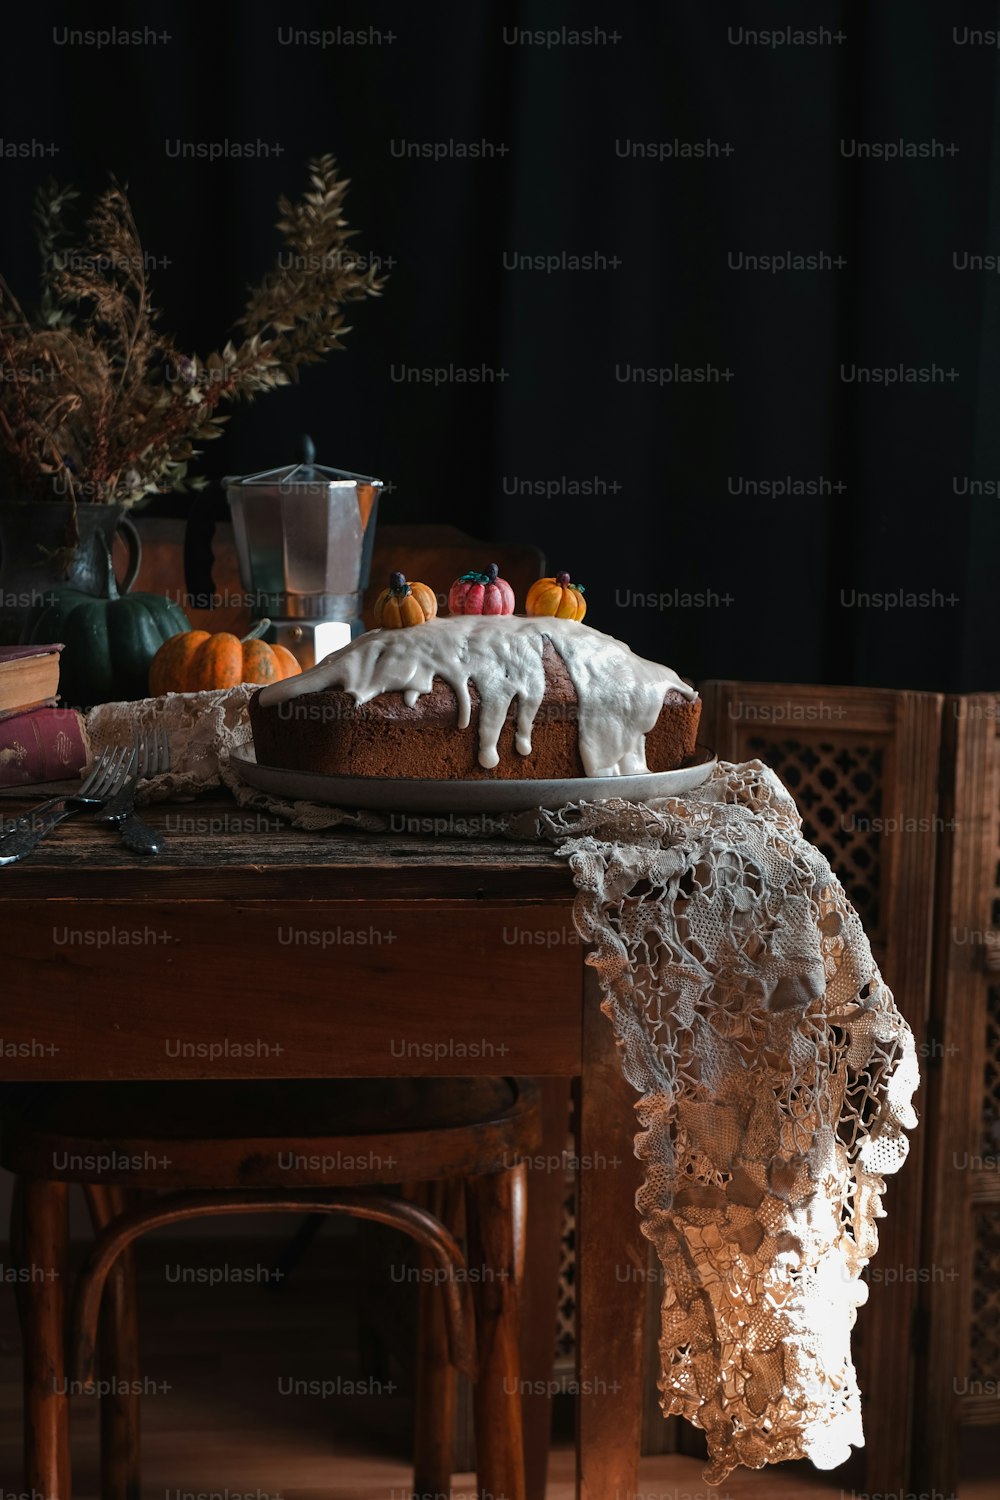 una mesa cubierta con un pastel cubierto de glaseado